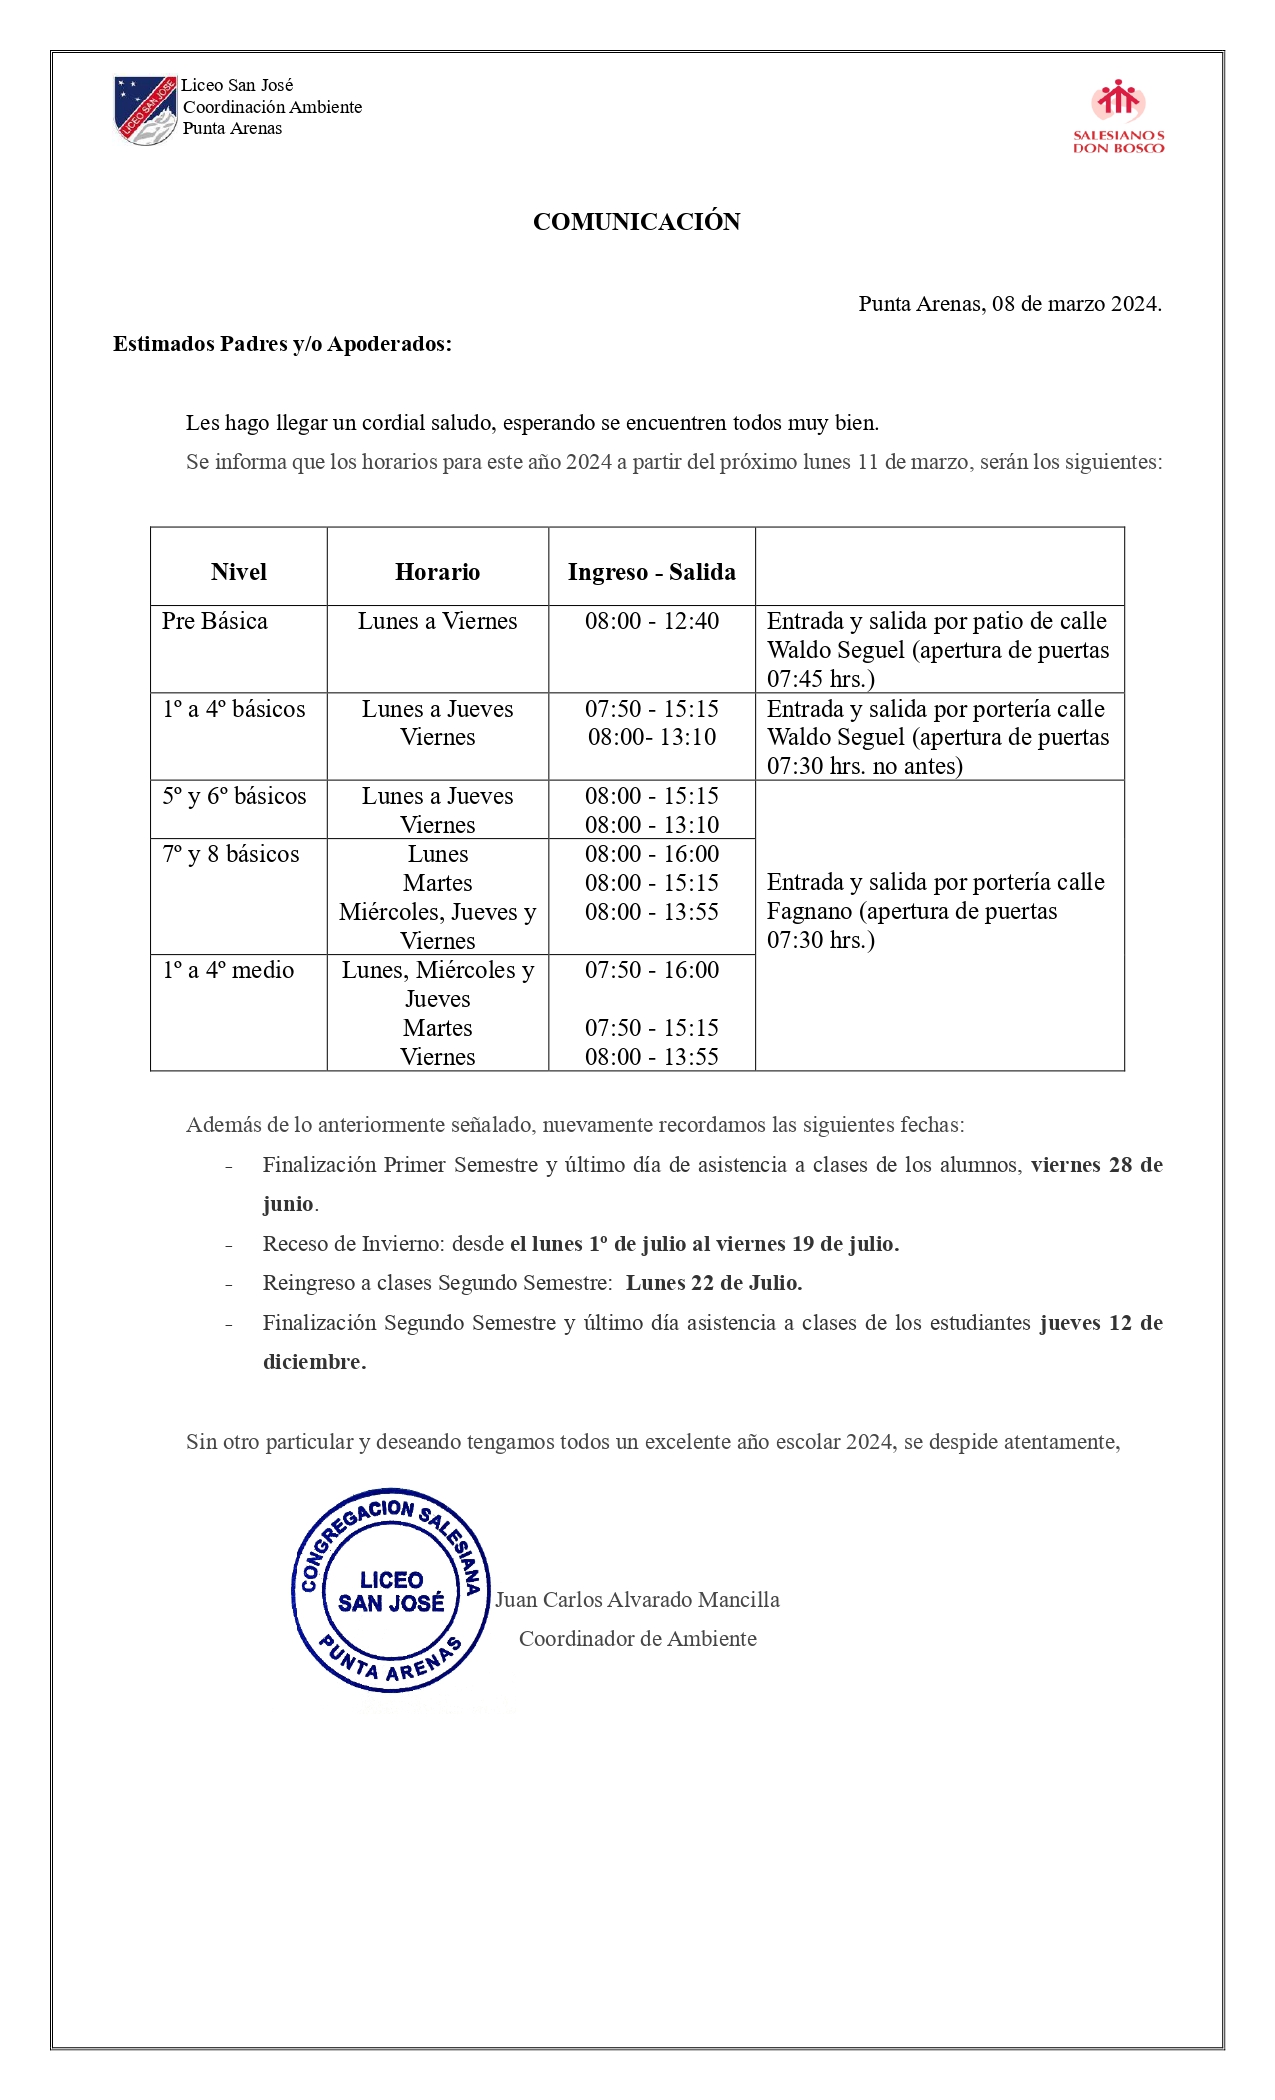 Comunicación PPAA - Horarios 2024_page-0001.jpg